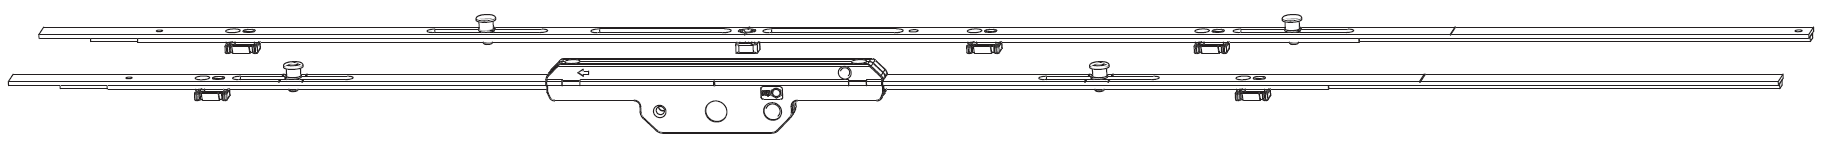 MAICO - Kit Cremonese RAIL-SYSTEMS per anta scorrevole altezza maniglia fissa prolungabile senza dss - gr / dim. 04 - entrata 17,5 - alt. man. 650 - lbb/hbb 1501 - 1700